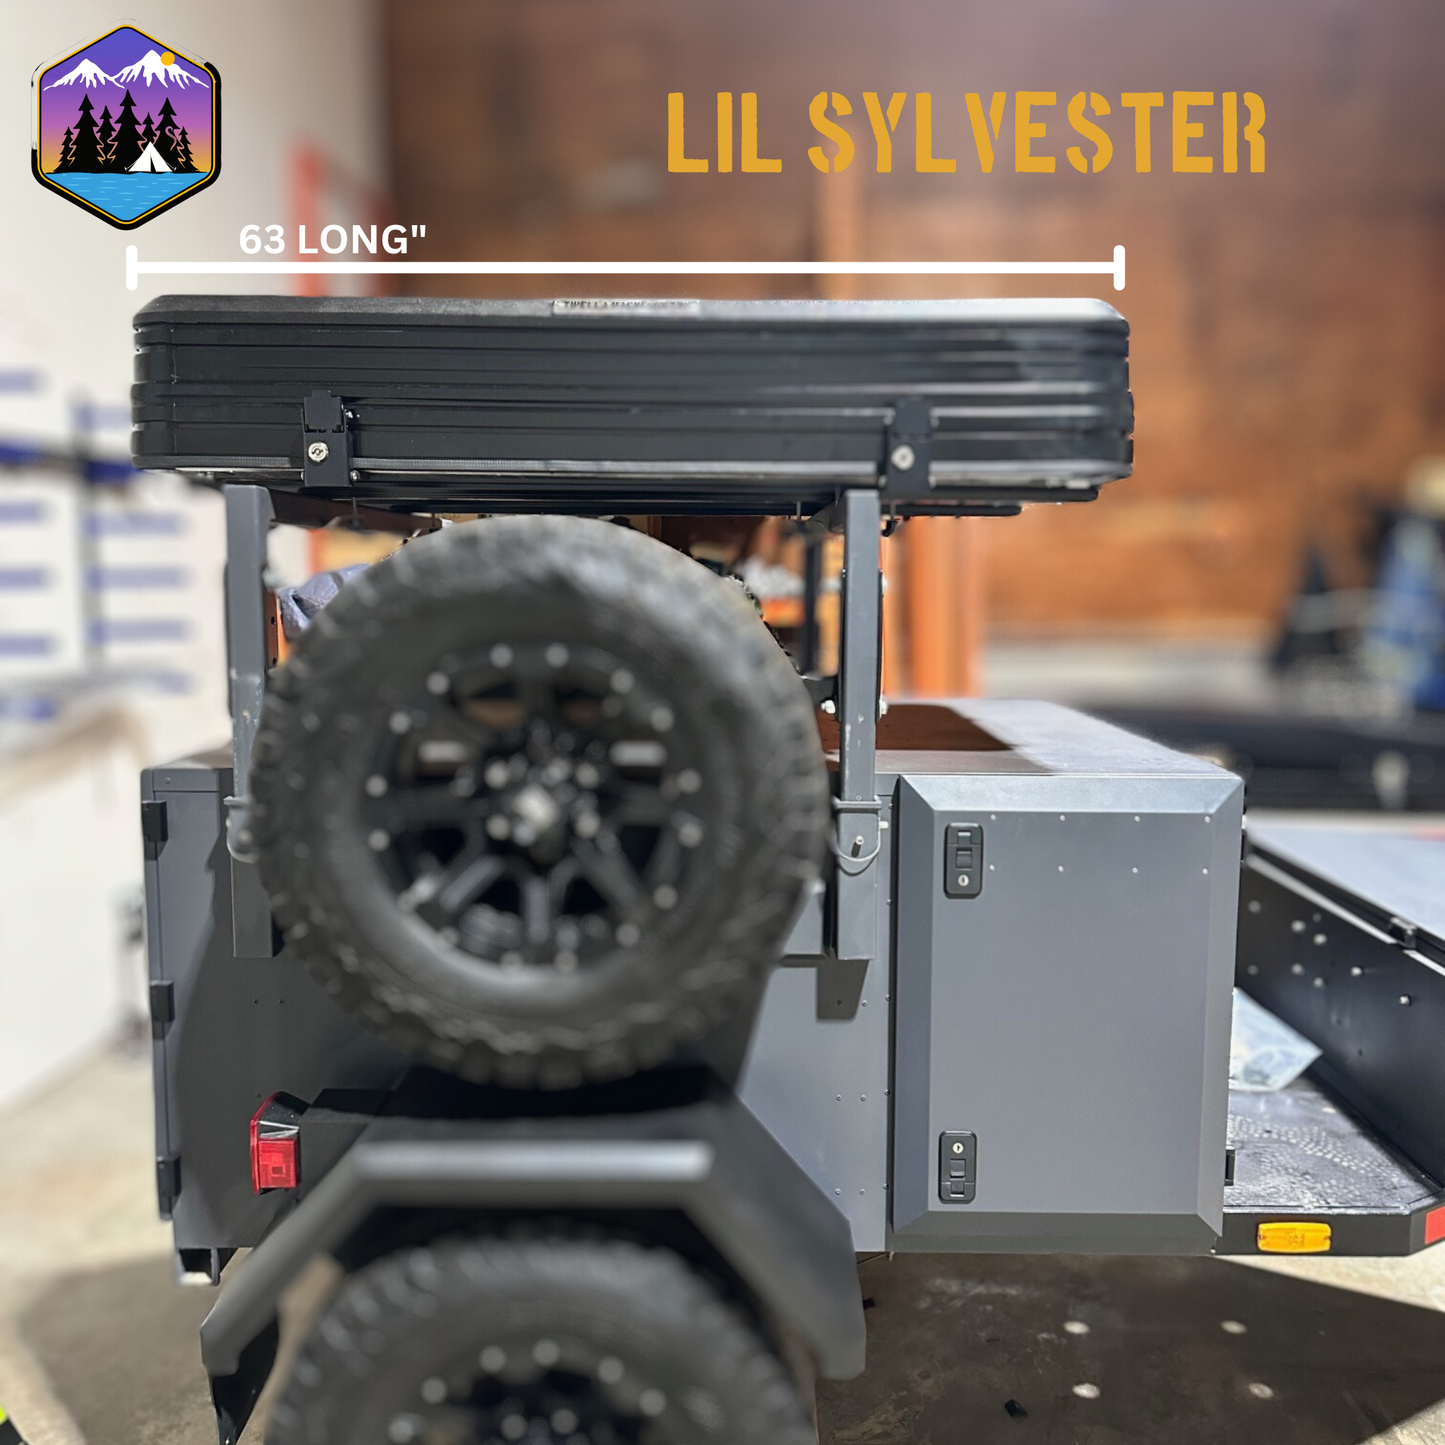 The LITTLE SYLVESTER Aluminum RTT